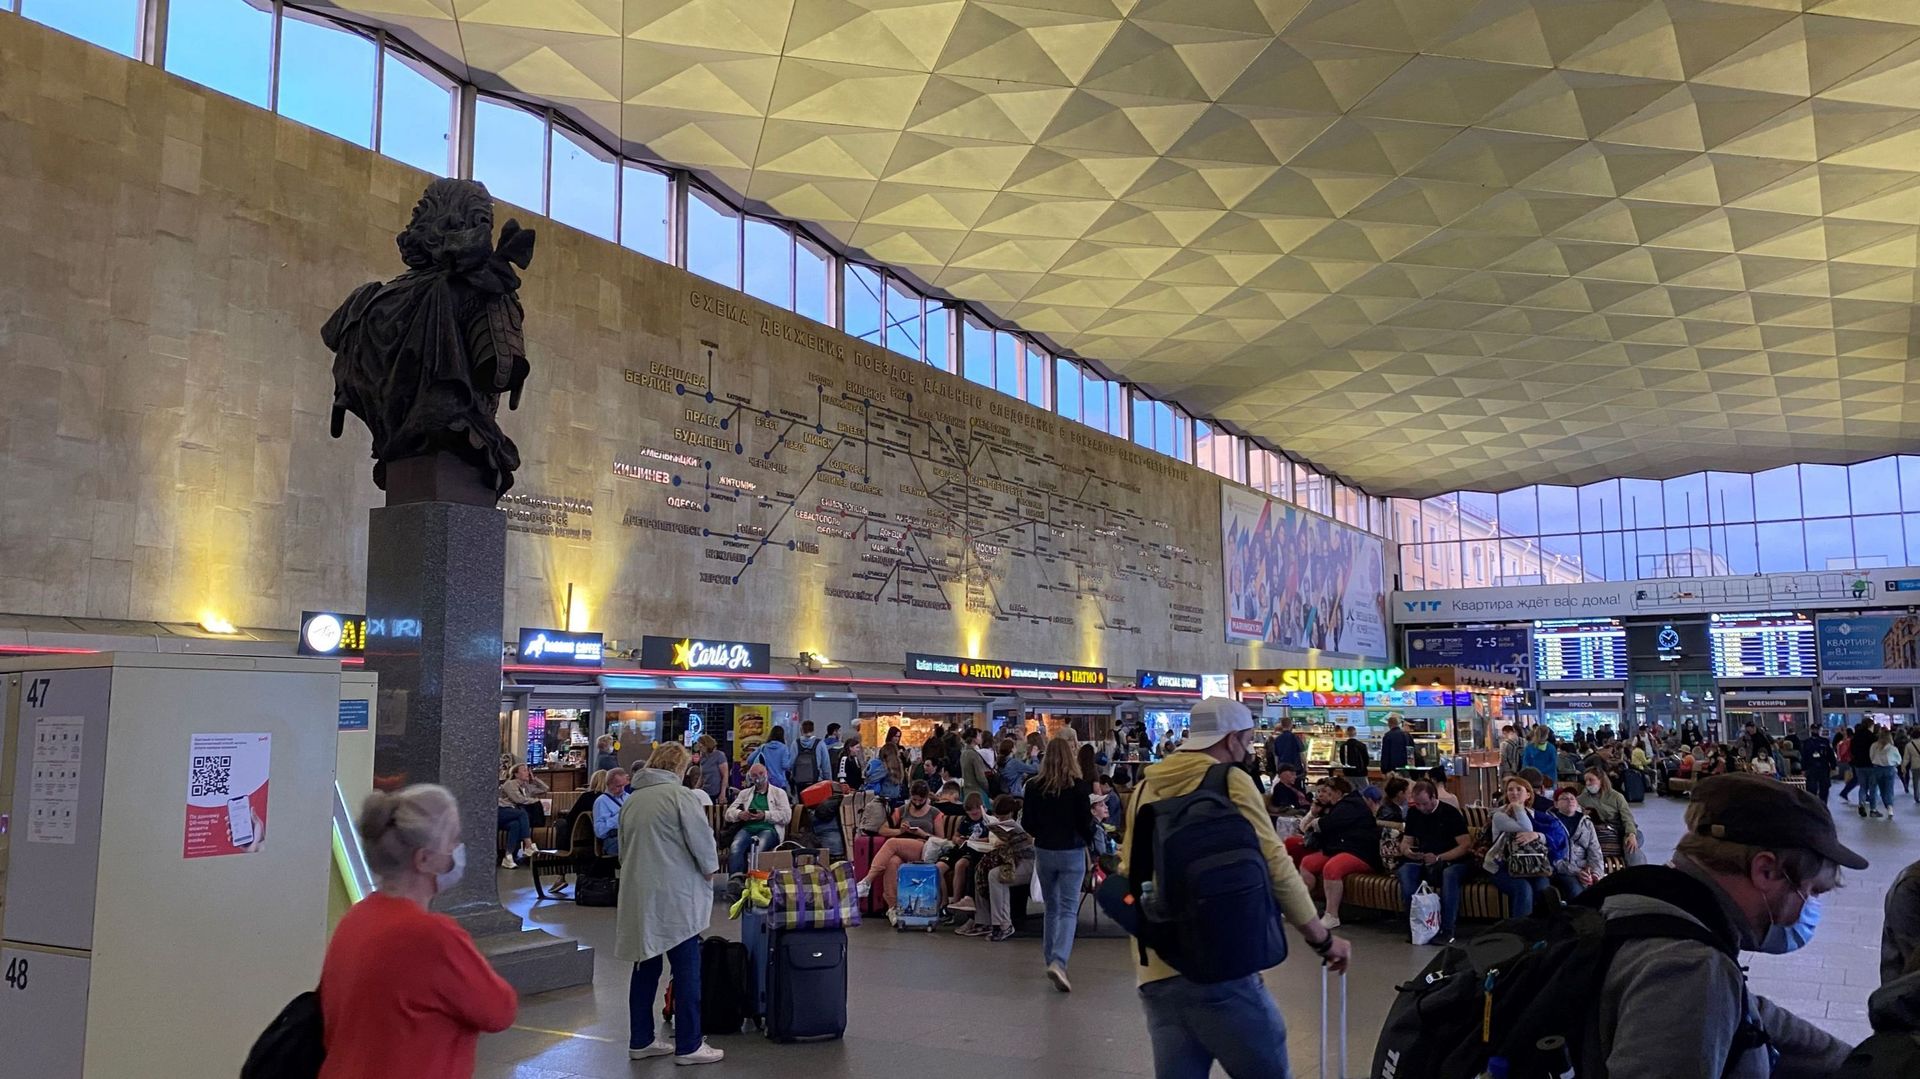 Le buste de Pierre le Grand a remplacé celui de Lénine dans le grand hall de la gare Moskovsakya à Saint-Péterbourg